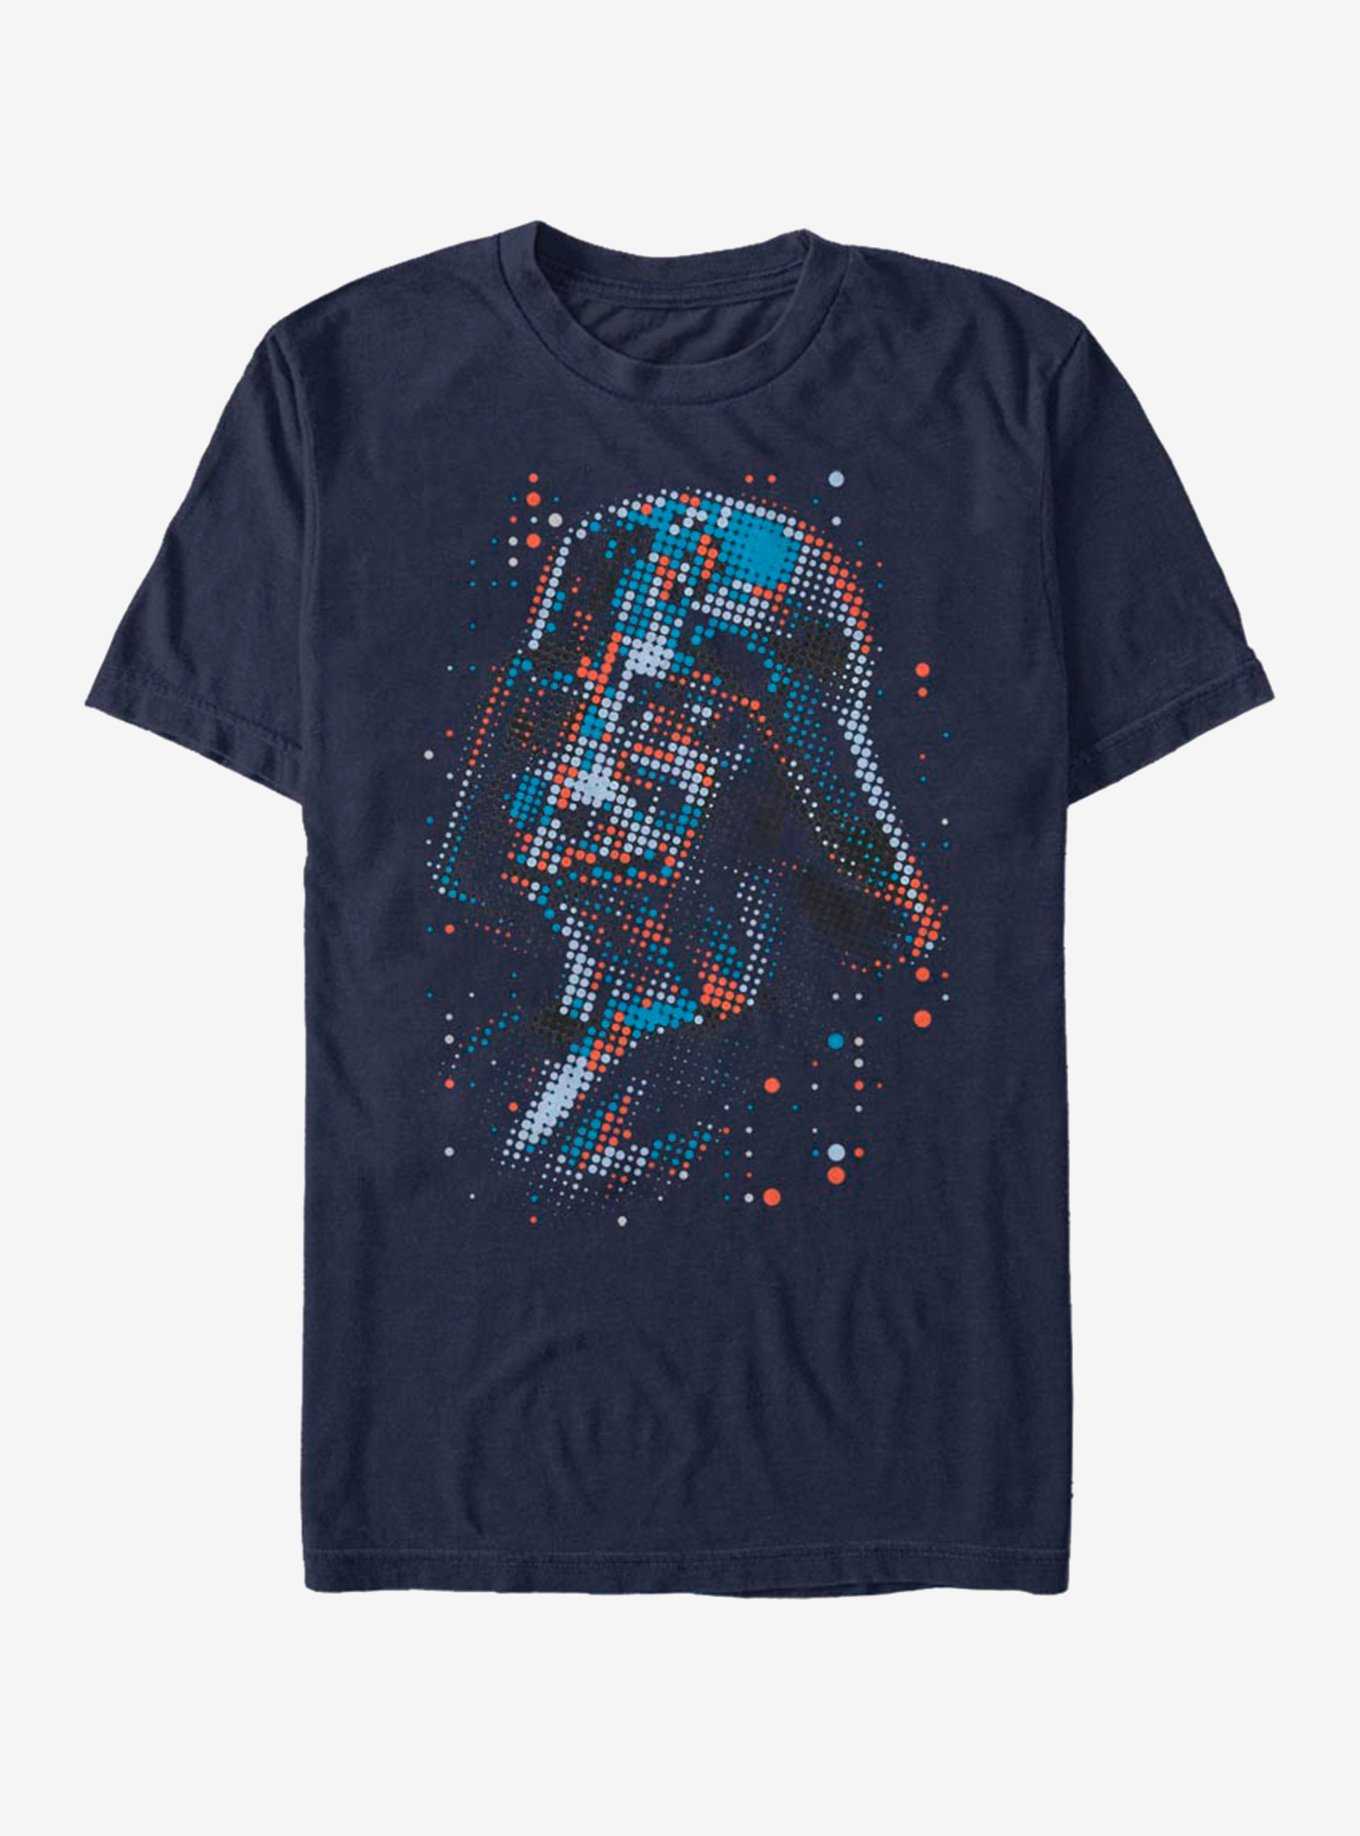 Star Wars Spot of Evil T-Shirt, , hi-res